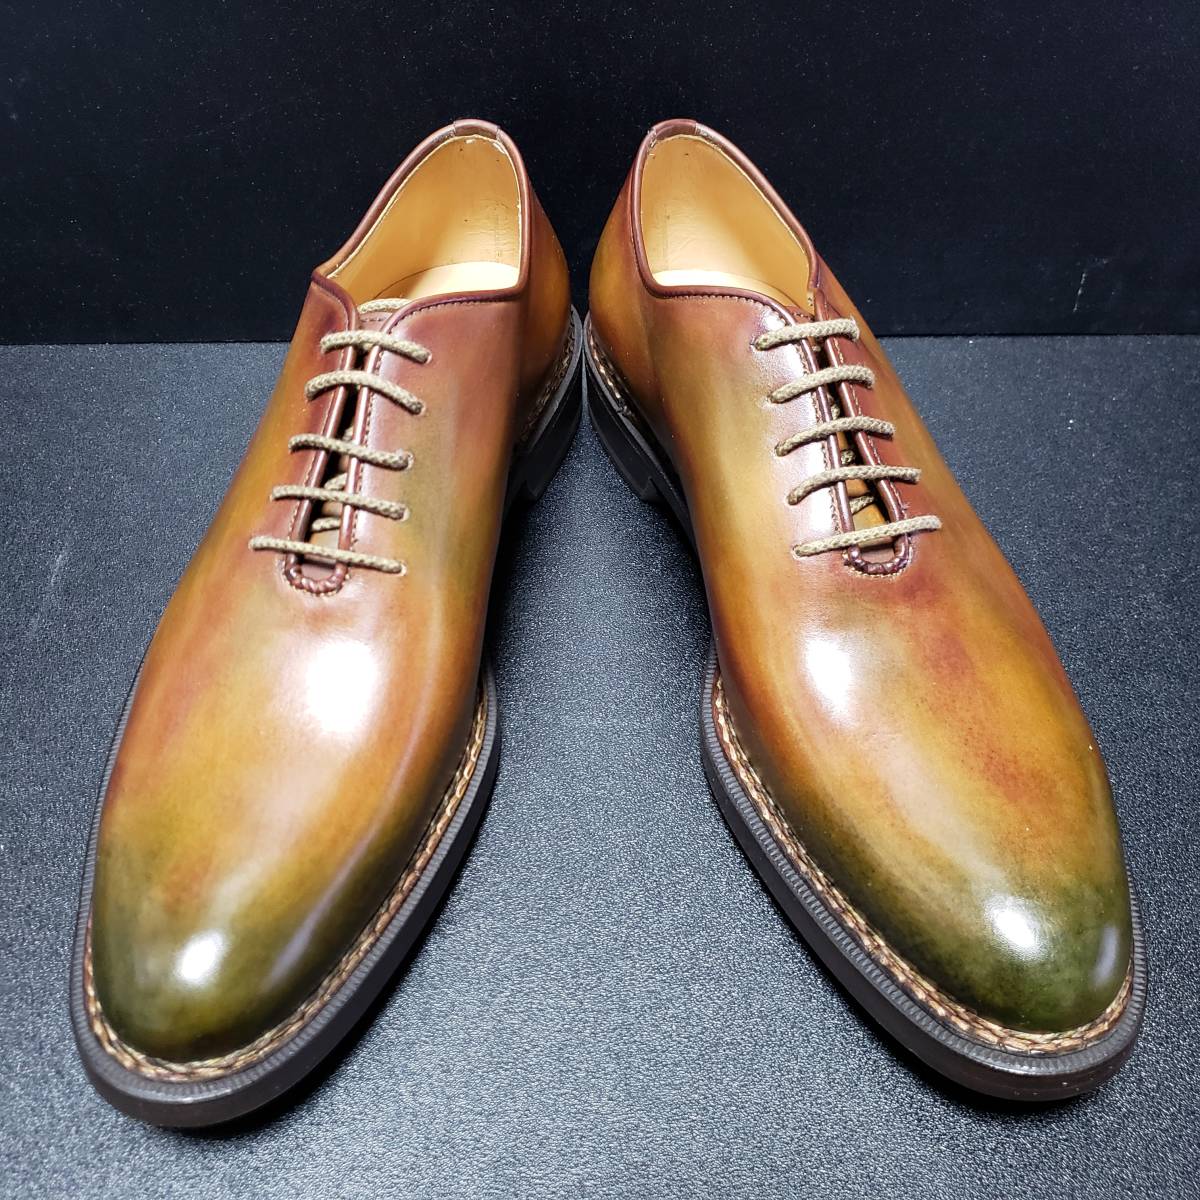 フラテッリジャコメッティ(F.lli Giacometti) 革靴 US8.5